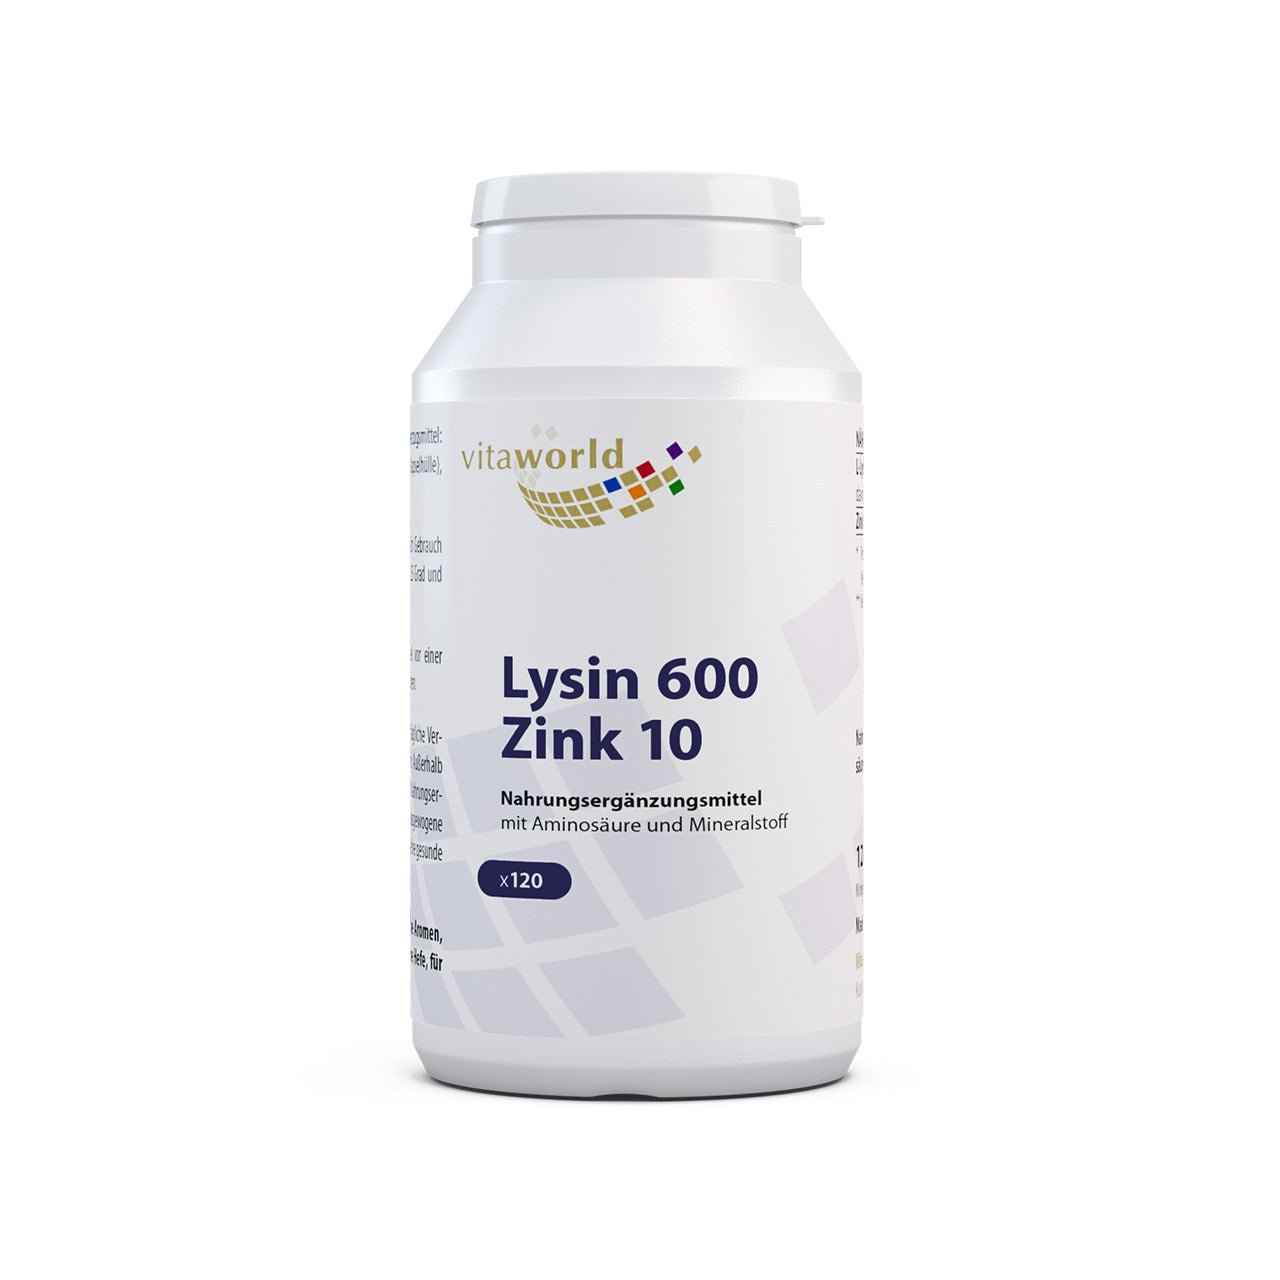 Lysine 600 mg plus zinc 10 mg (120 caps)